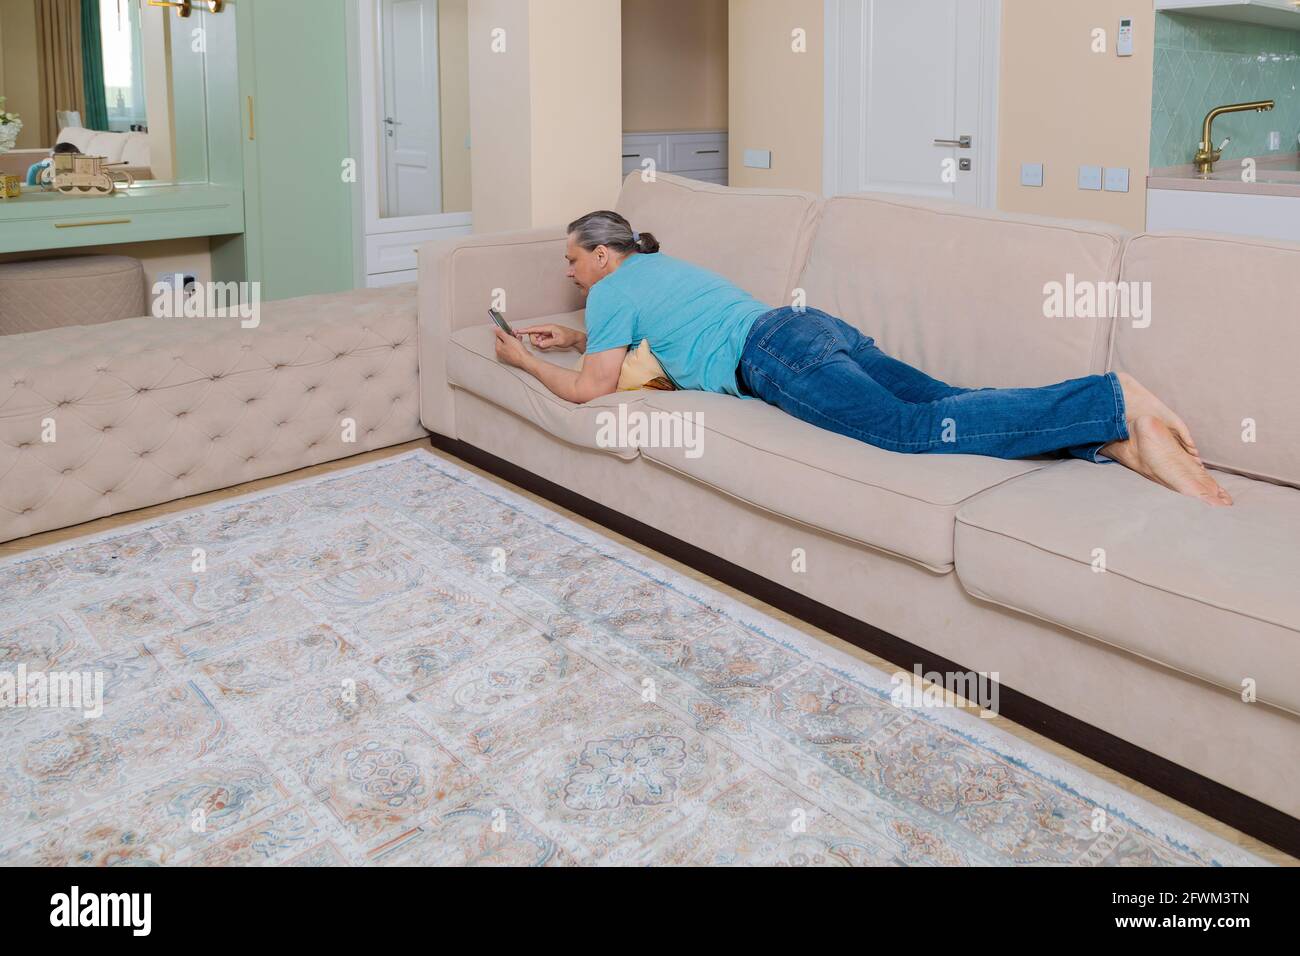 Ein erwachsener Mann durchsucht in einem Mobiltelefon soziale Netzwerke, während er auf einem Sofa in einer Wohnung liegt. Stockfoto